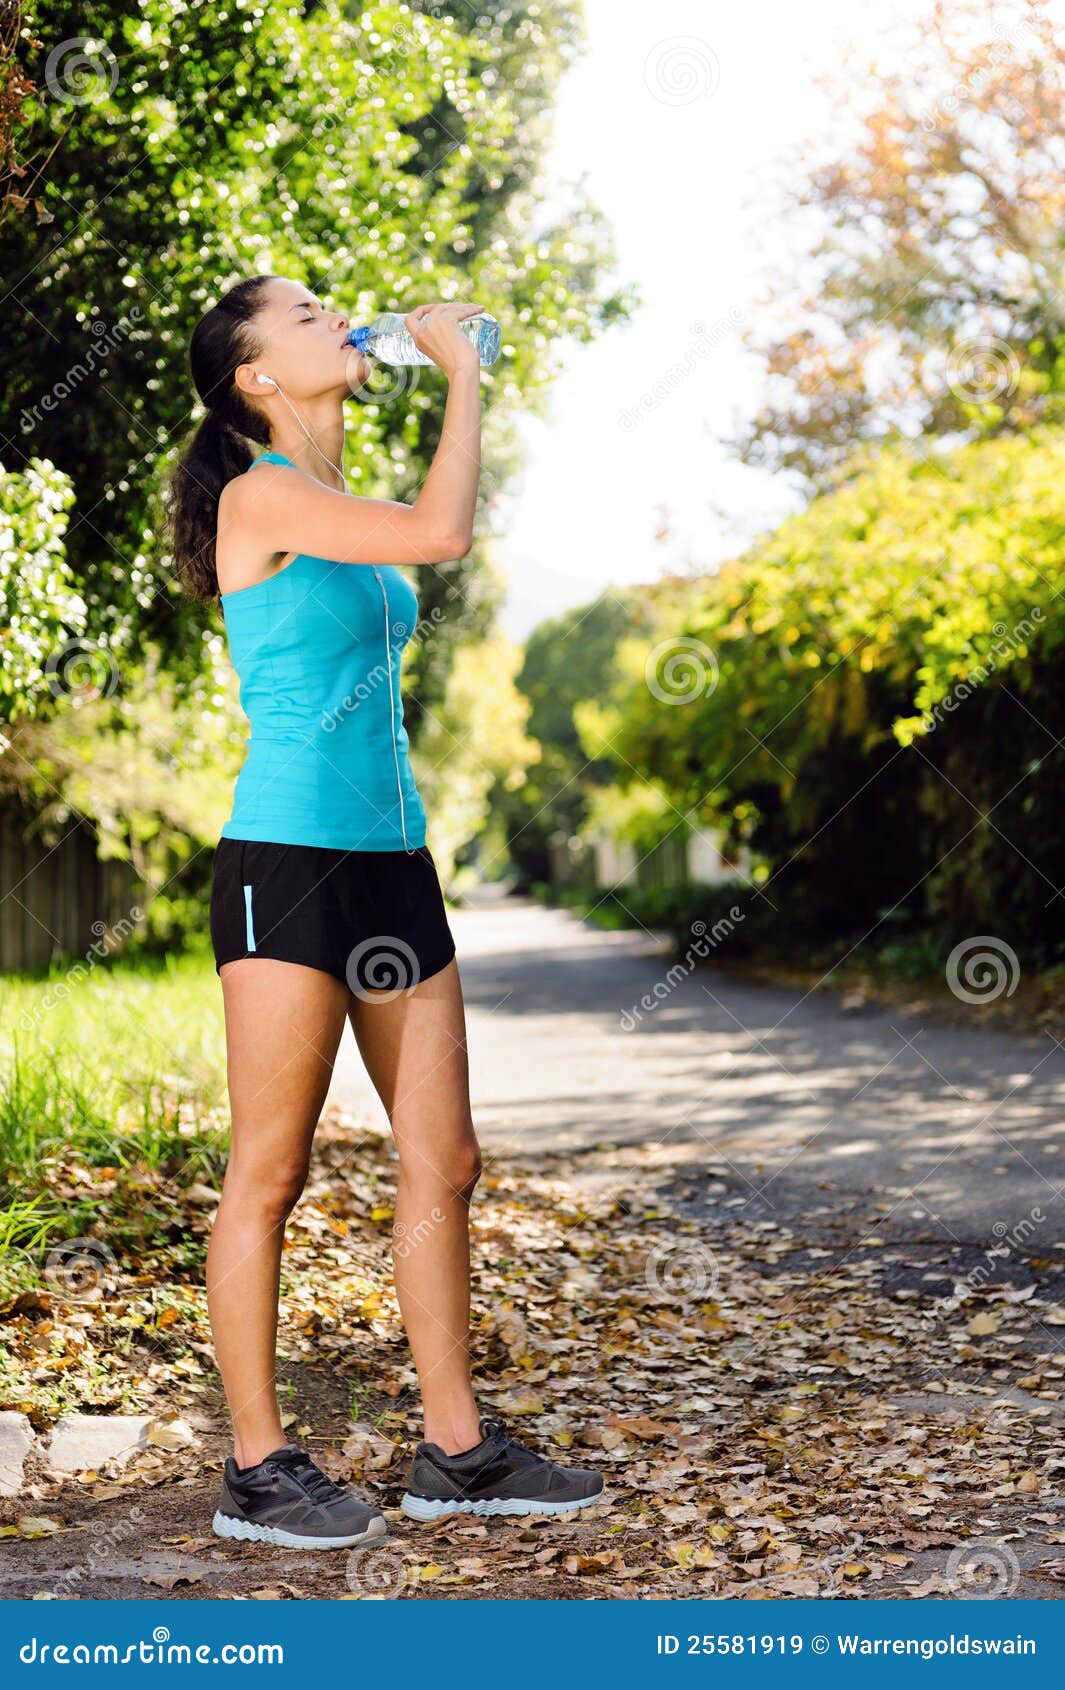 Refreshing water athlete stock image. Image of bottle - 25581919